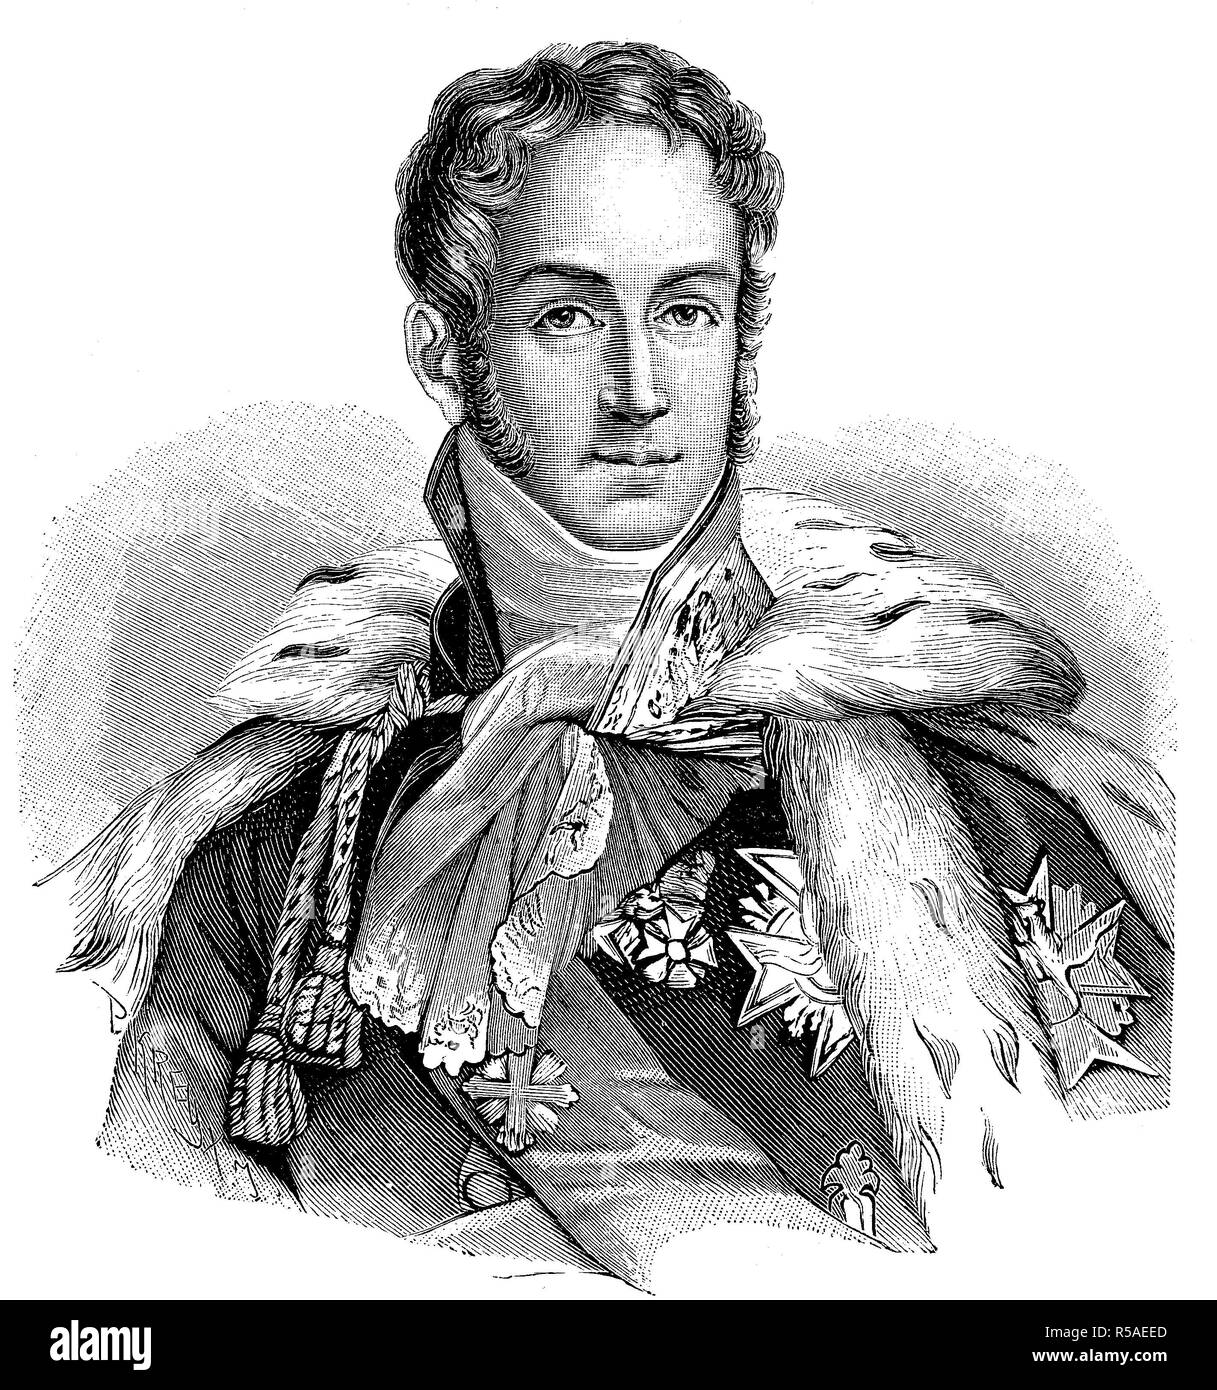 Le Prince Jules Auguste Armand Marie, comte de Polignac, 14 mai 1780, 2 mars 1847, woodcut, France Banque D'Images